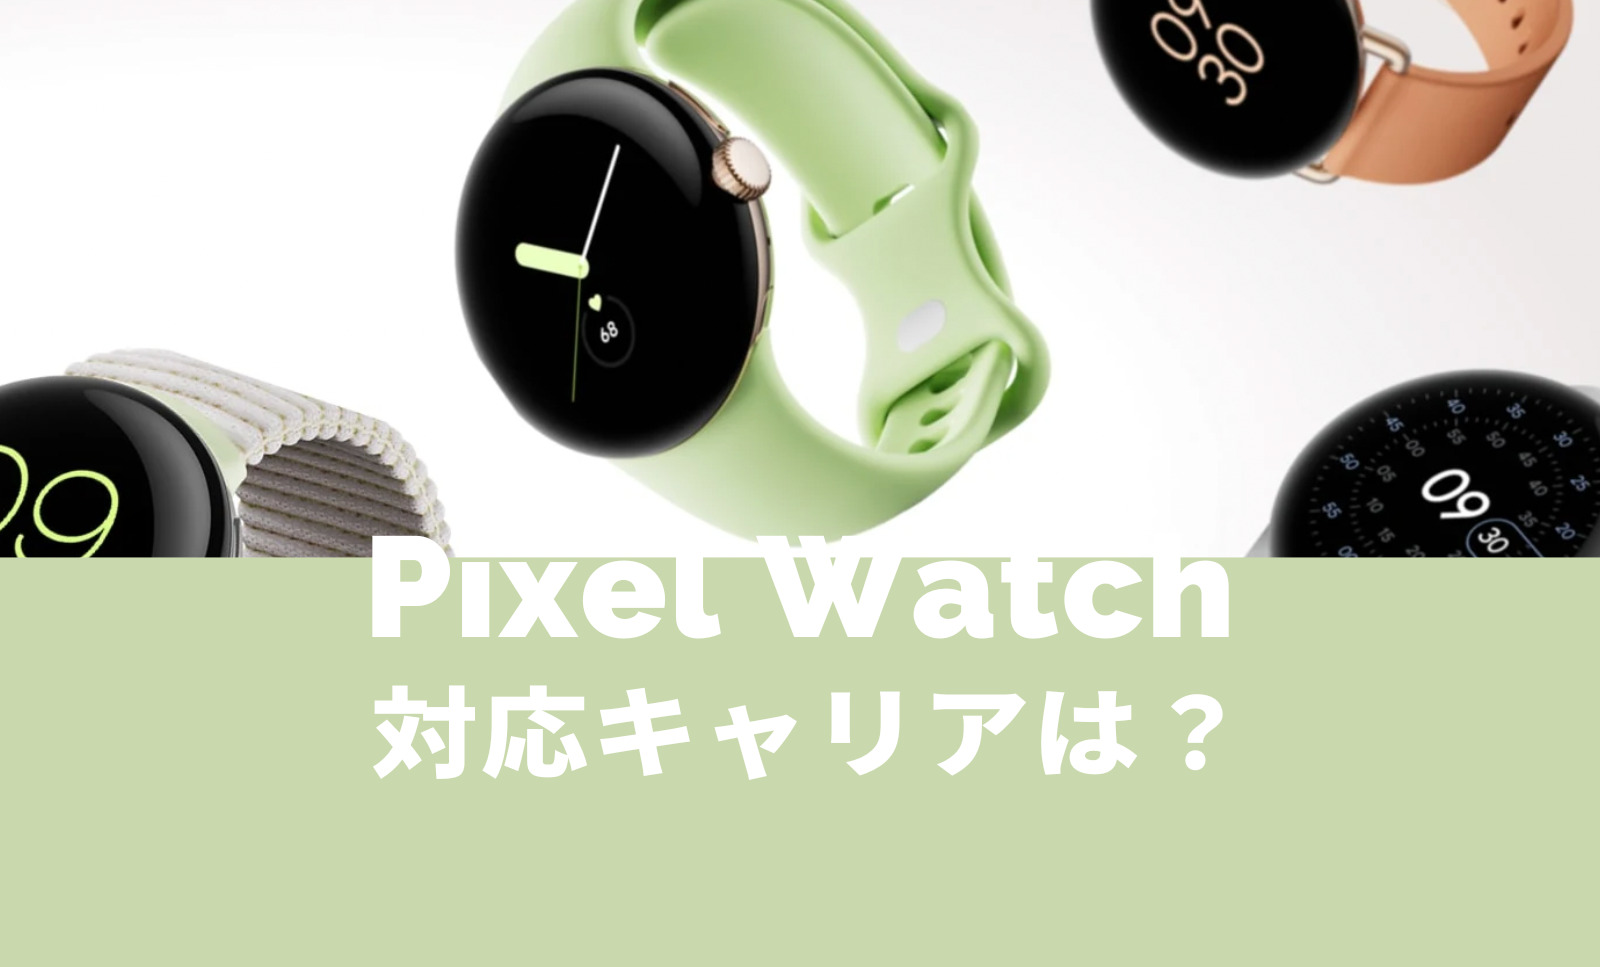 Pixel Watch 2(ピクセルウォッチ)が発売されるキャリアは？【Google】のサムネイル画像